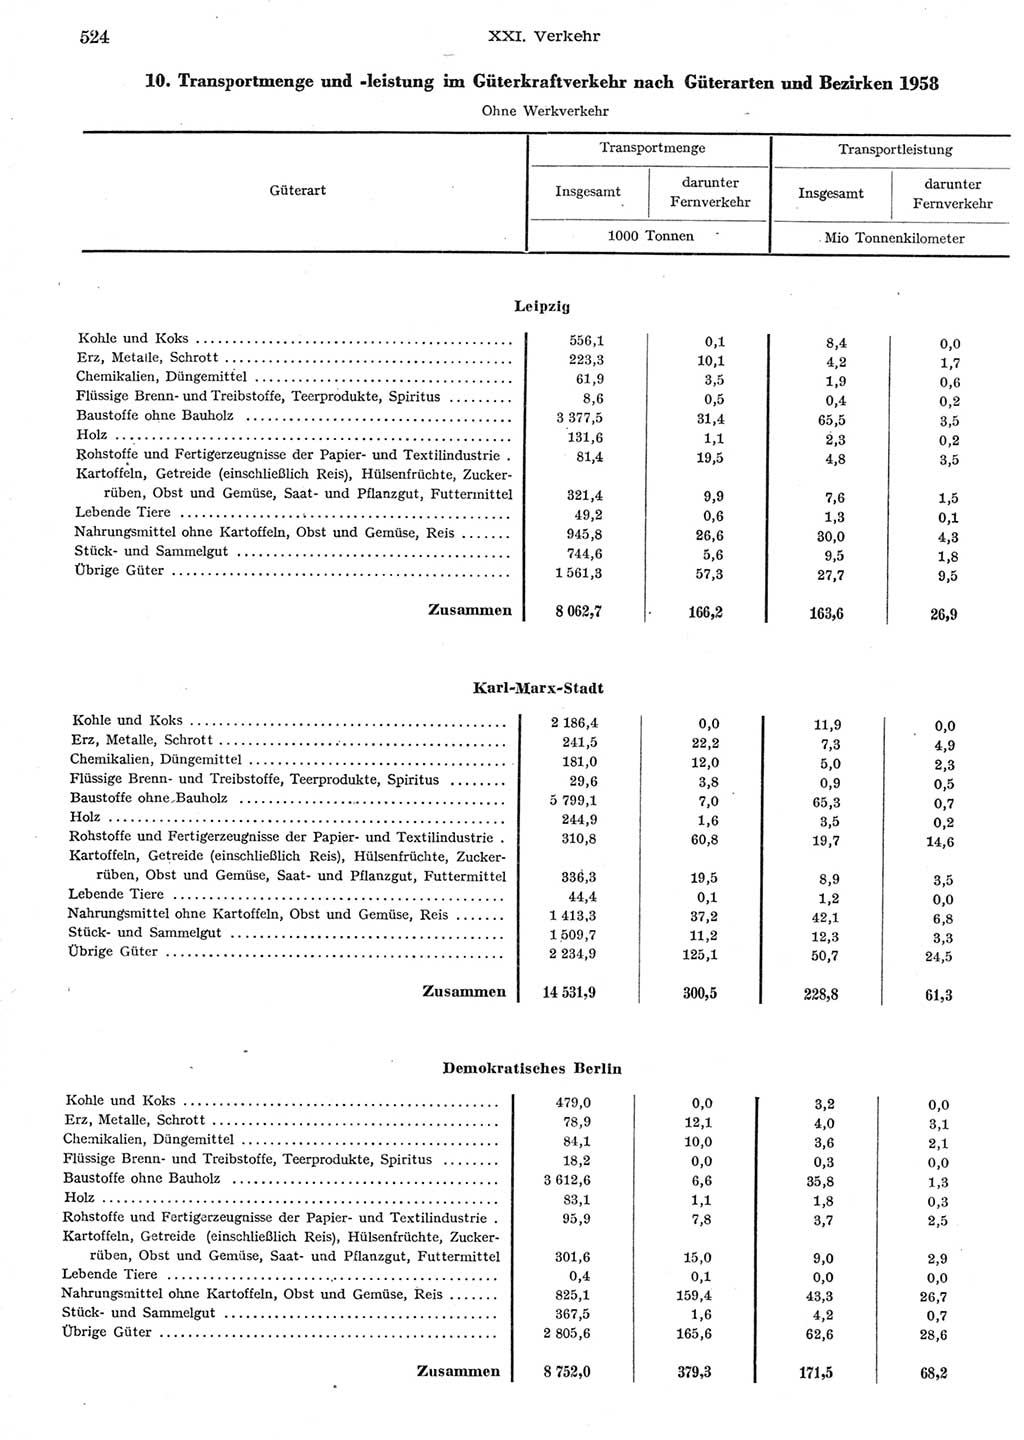 Statistisches Jahrbuch der Deutschen Demokratischen Republik (DDR) 1958, Seite 524 (Stat. Jb. DDR 1958, S. 524)